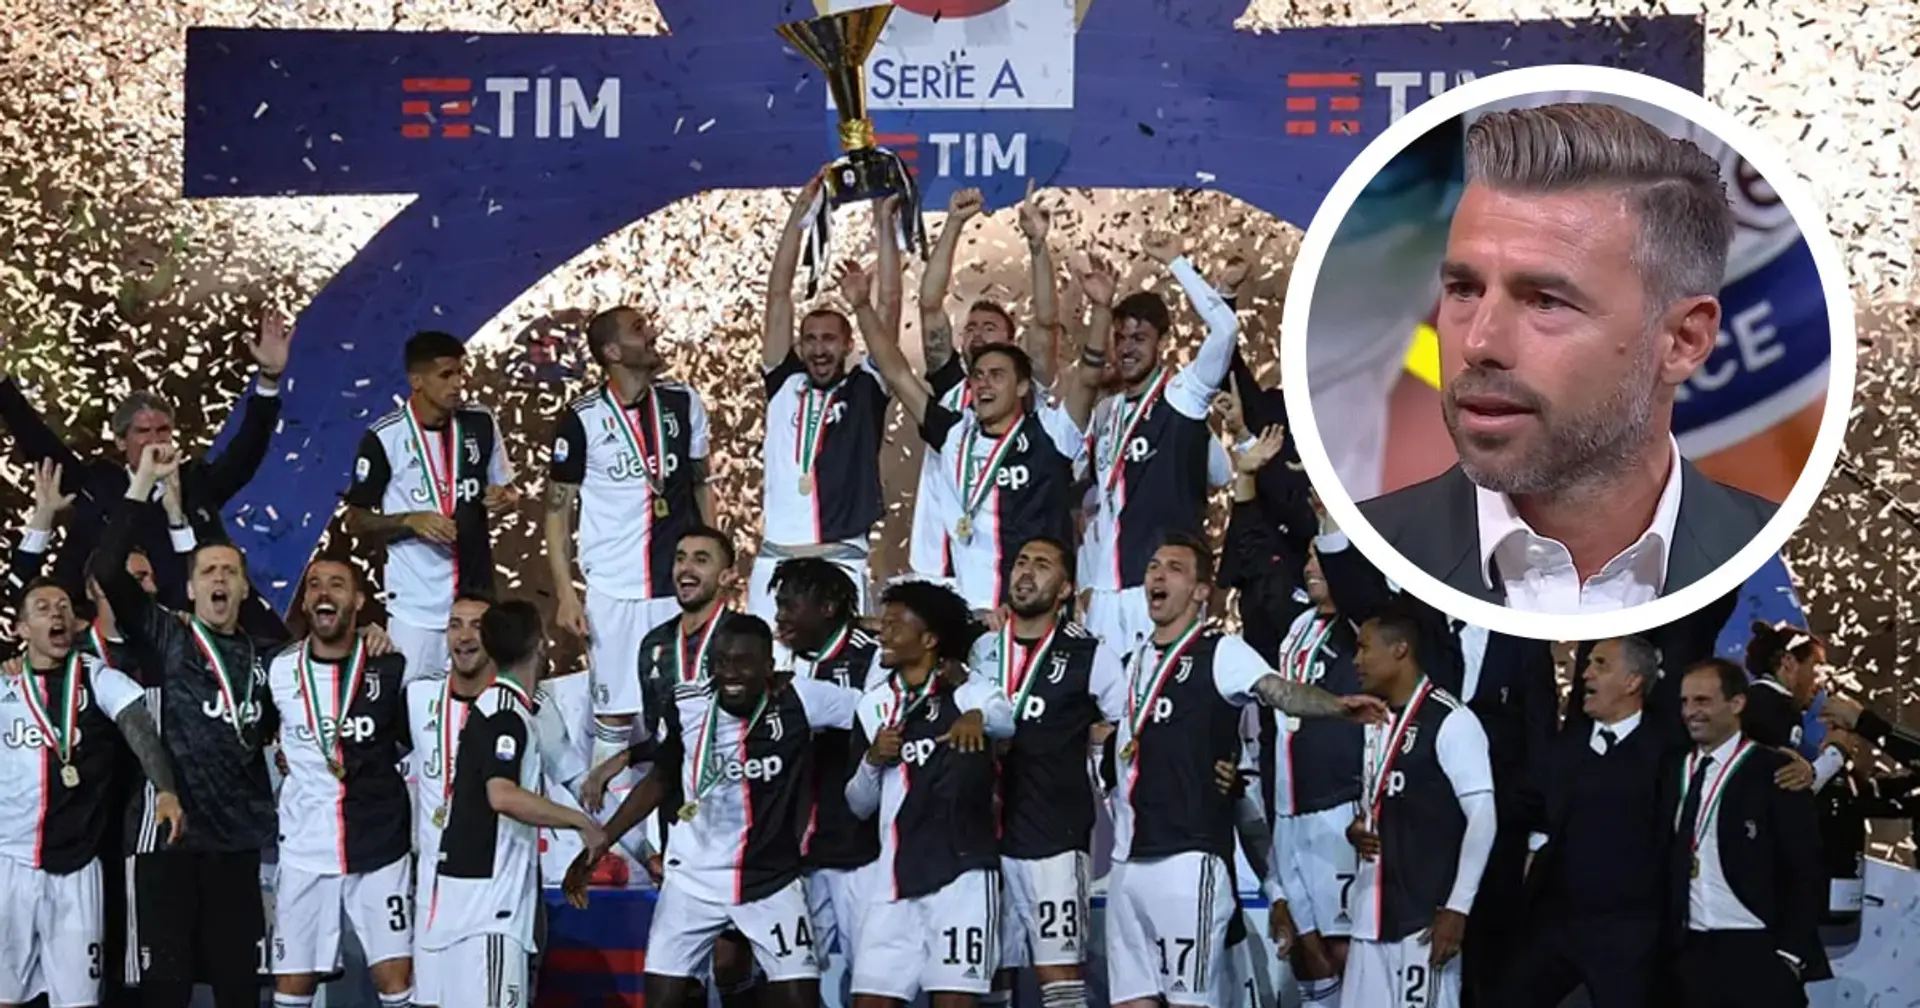 "Io ero silenzioso", Barzagli rivela chi era il vero leader di quella Juventus e qual è stato il successo più bello